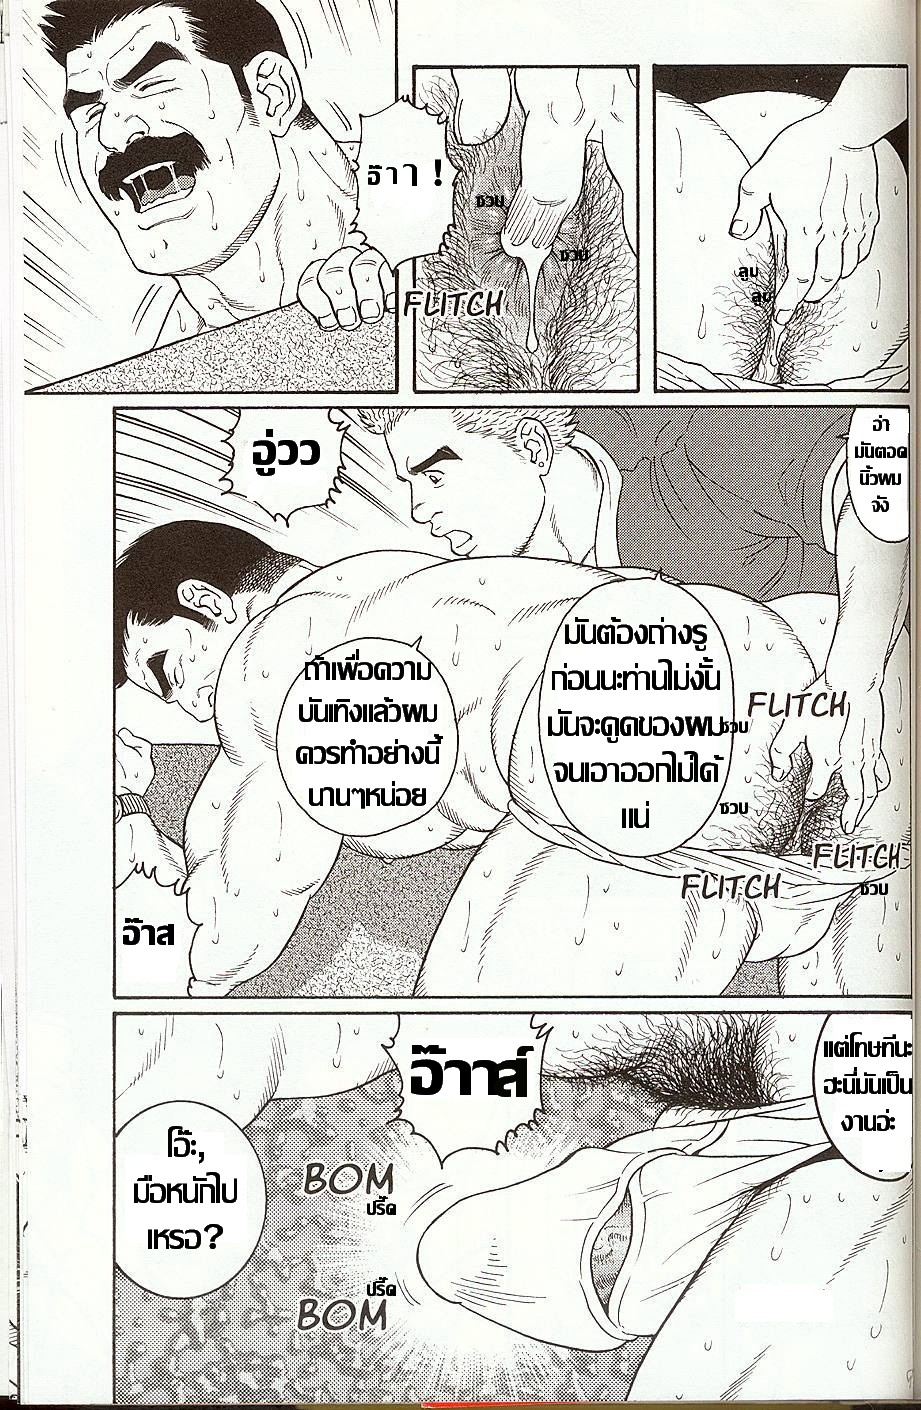 อ่านโดจินแปลไทย